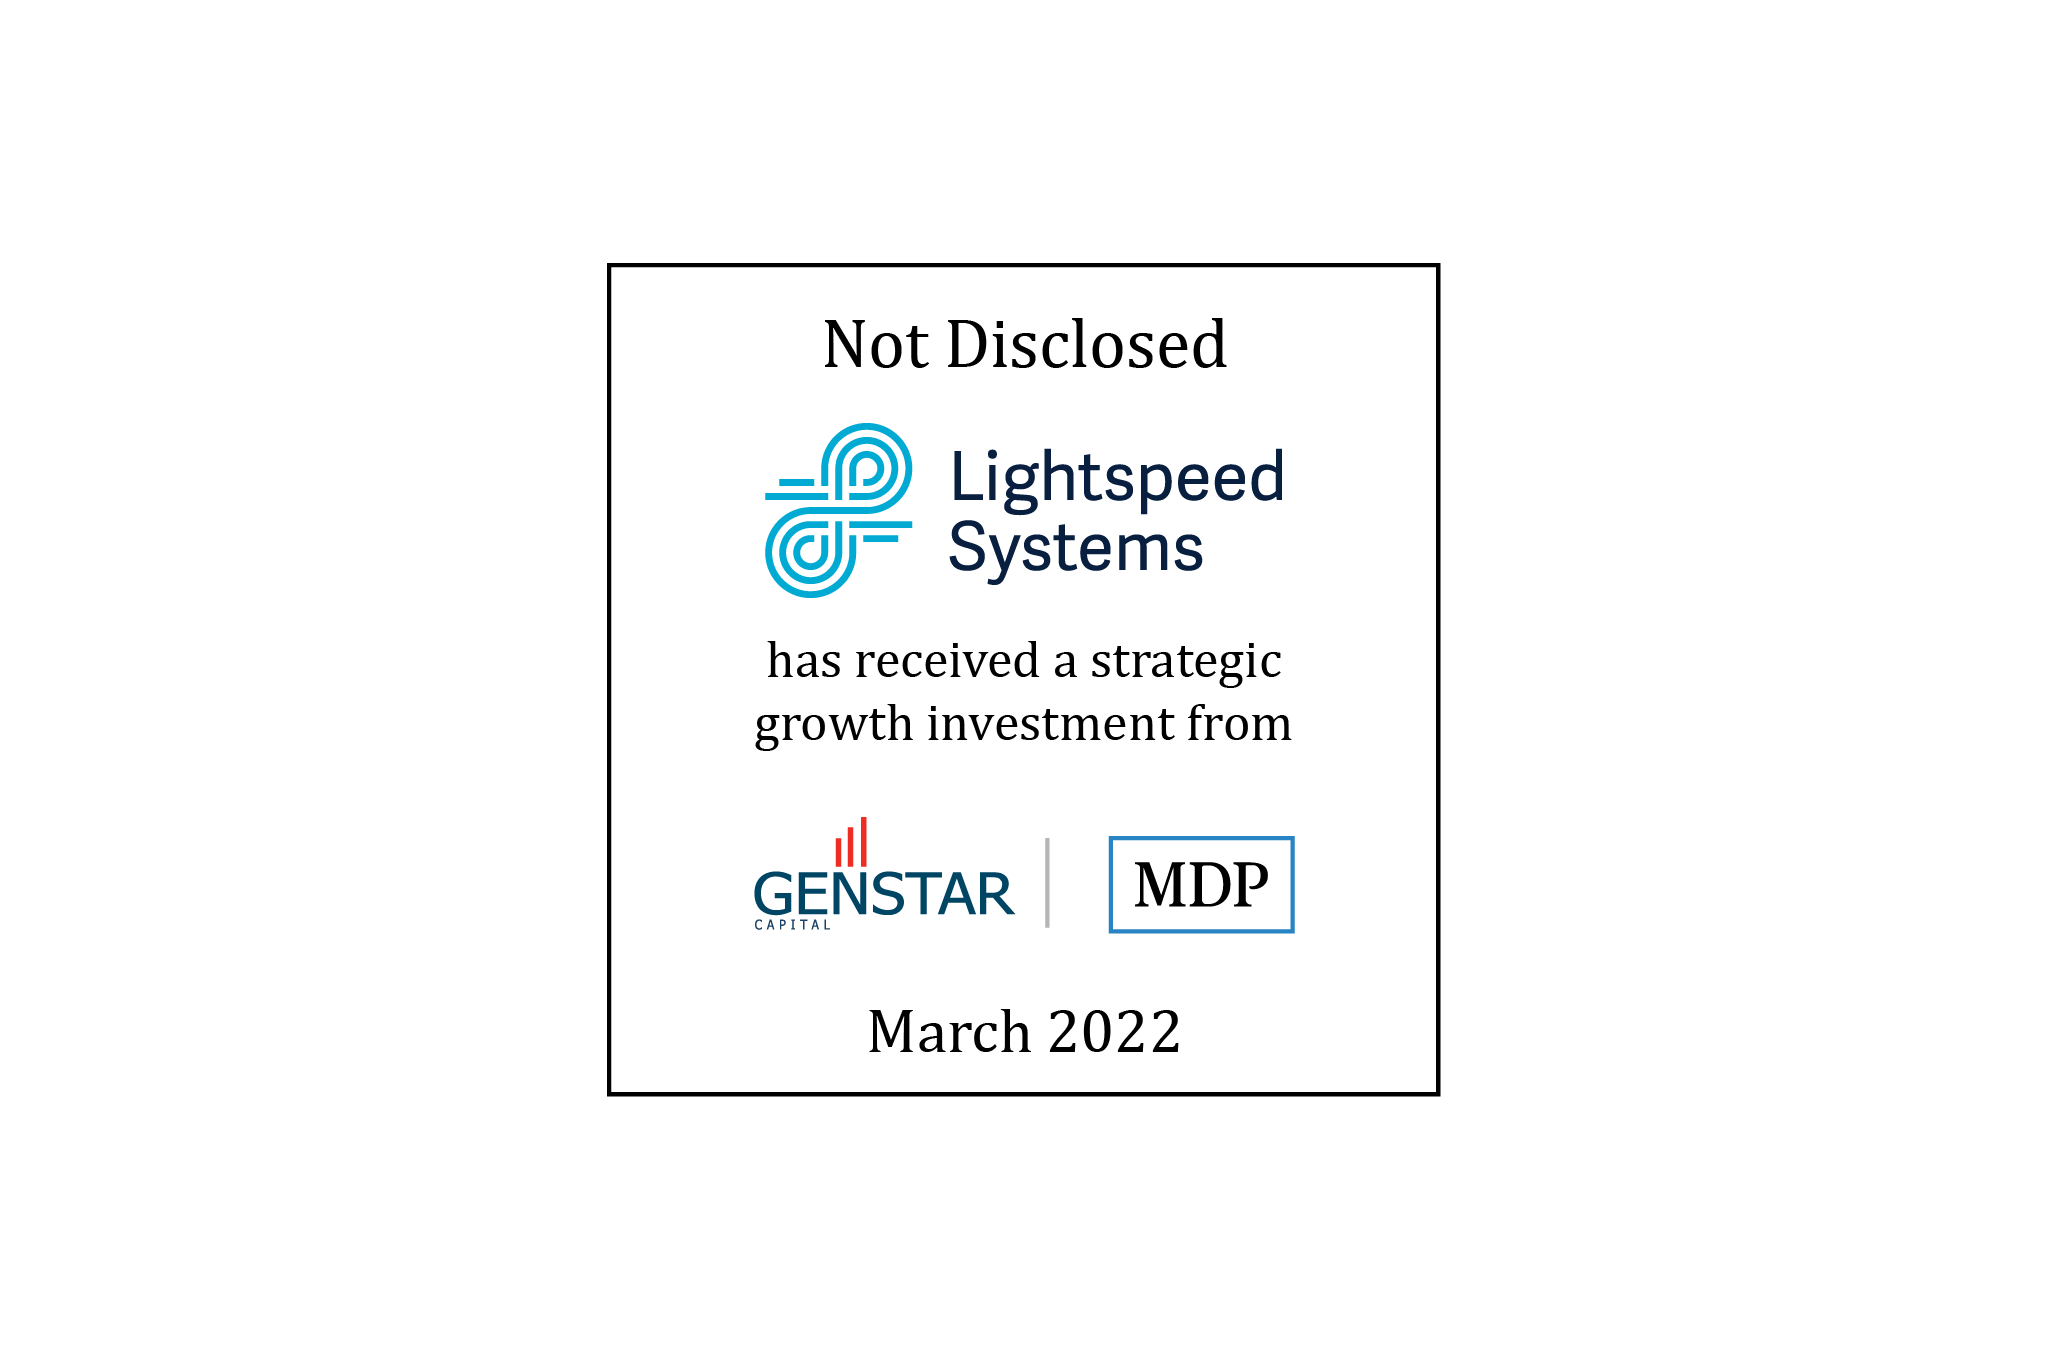 Lightspeed Systems/Genstar, MDP tombstone